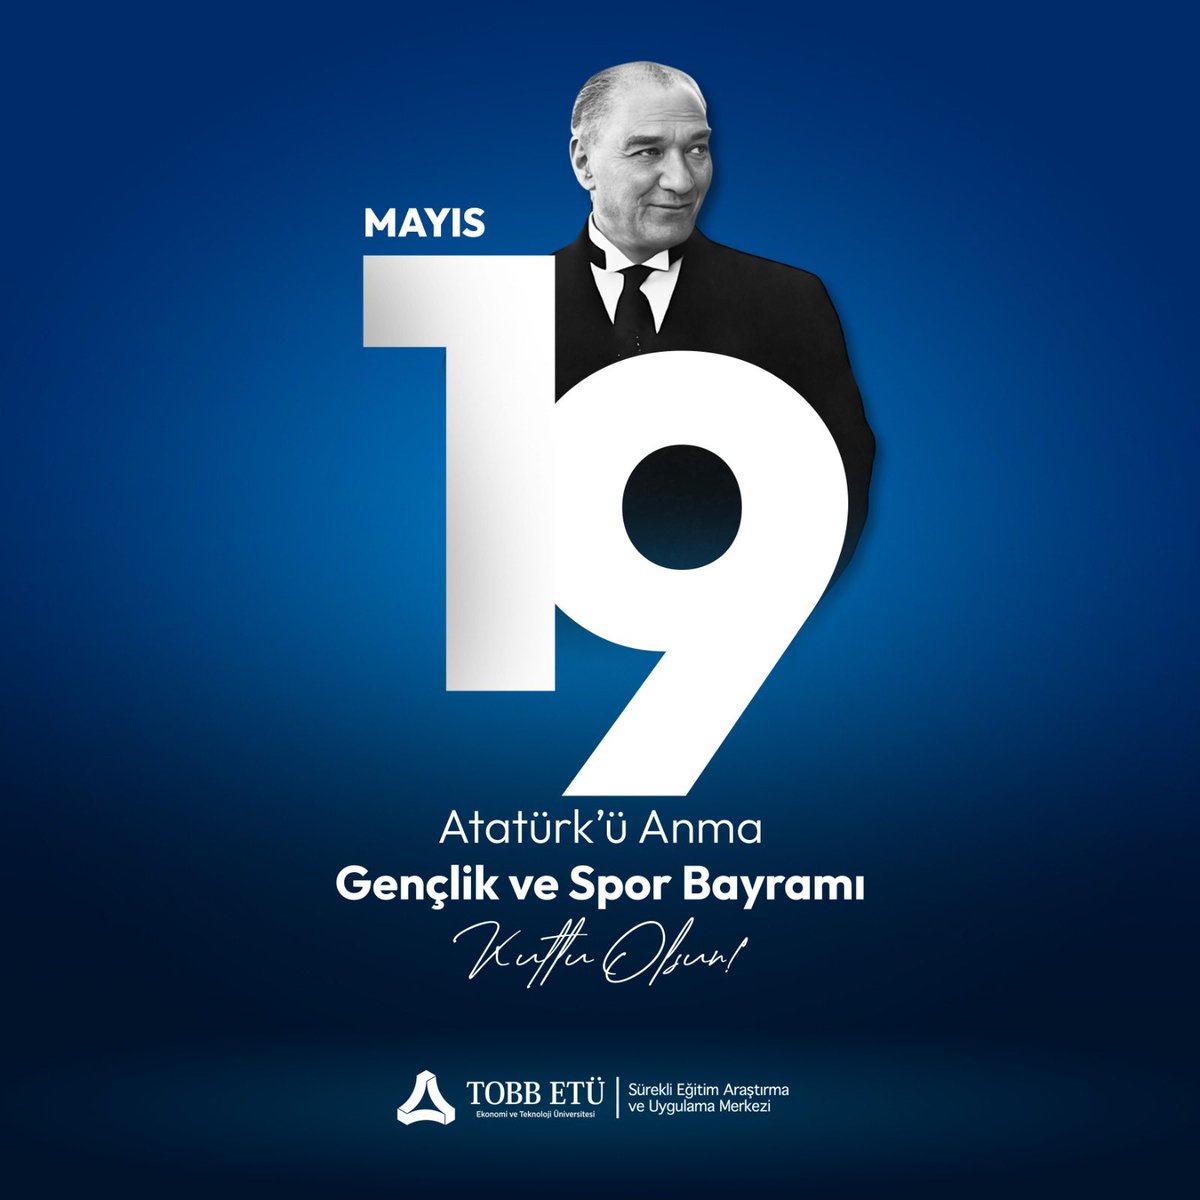 19 Mayıs Atatürk’ü Anma, Gençlik ve Spor Bayramı Kutlu Olsun 🇹🇷 #19mayıs1919 #19mayısatatürküanmagençlikvesporbayramı #19mayıs🇹🇷